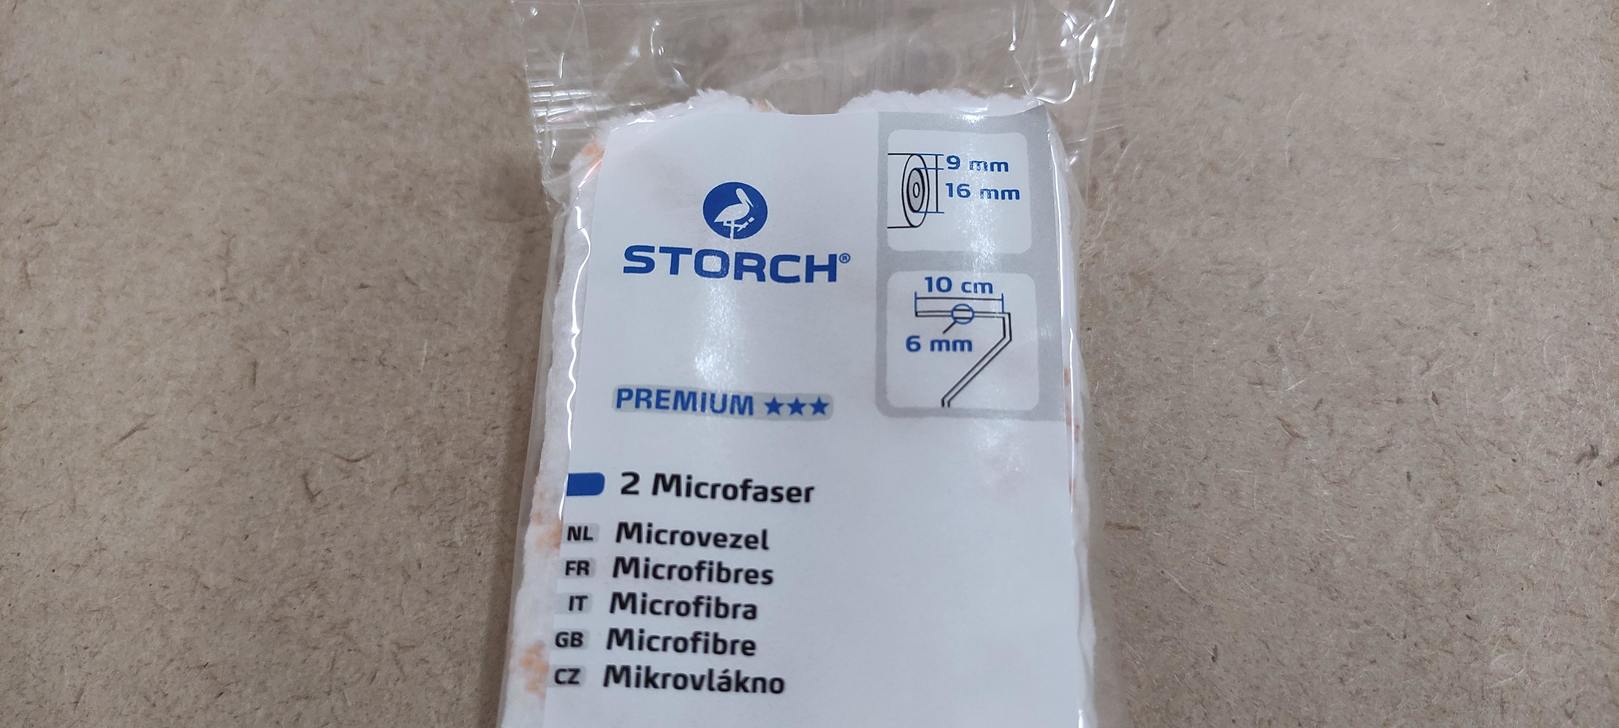 Валик Микрофибра STORCH Premium MicroSTAR 9 orange, ворс 9 мм, ширина 10 см, ядро 16 мм (2шт/уп)